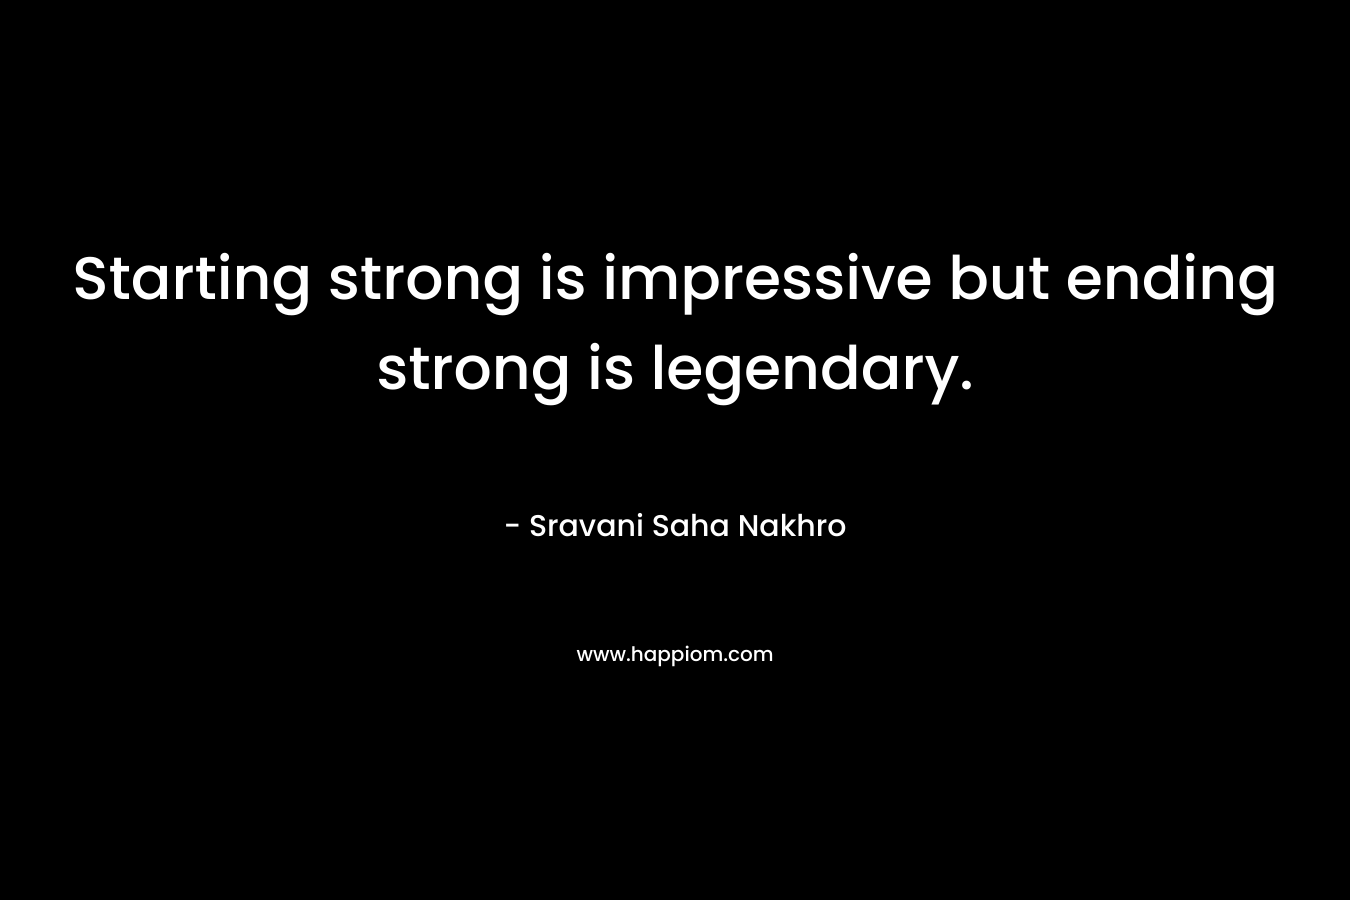 Starting strong is impressive but ending strong is legendary. – Sravani Saha Nakhro